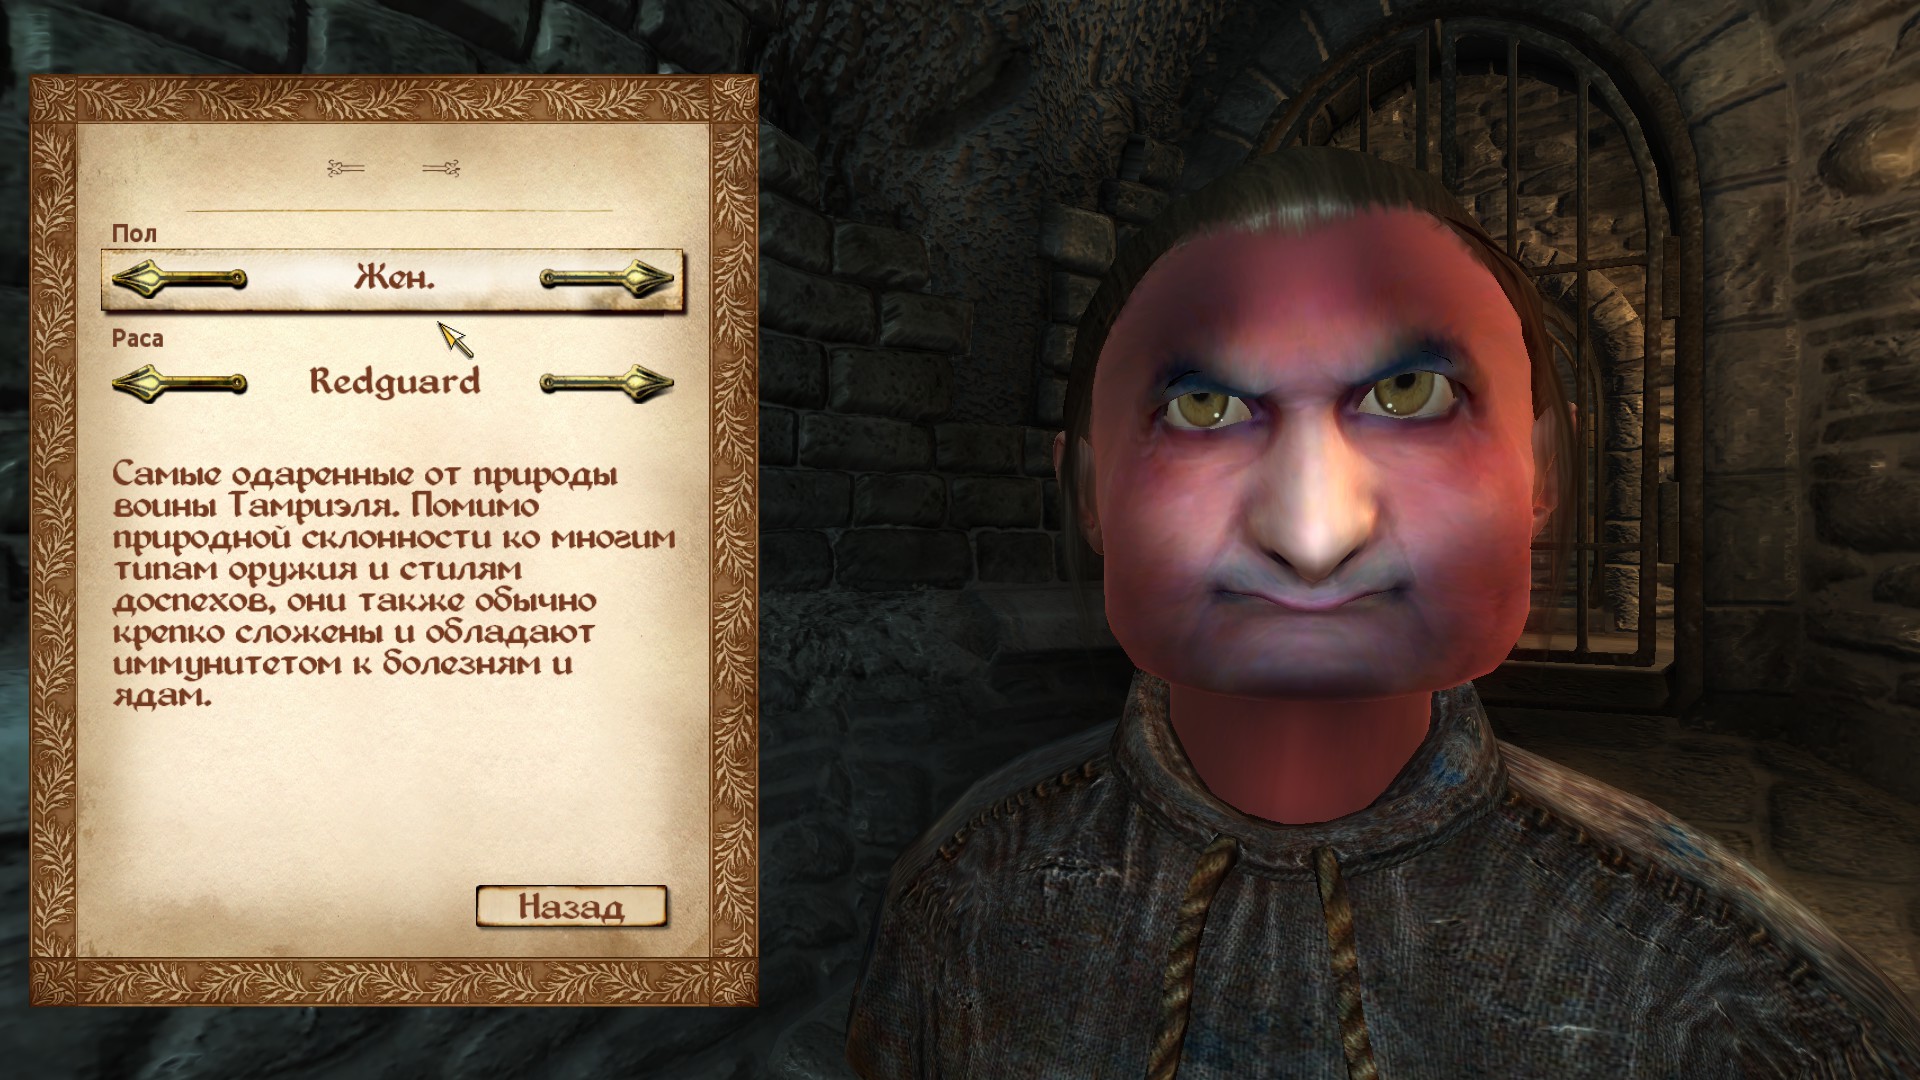 Пандирна baldur s. Восторженный поклонник the Elder Scrolls 4 Oblivion. Baldur's Gate 3 редактор персонажа. Обливион редактор персонажей. Обливион персонажи.